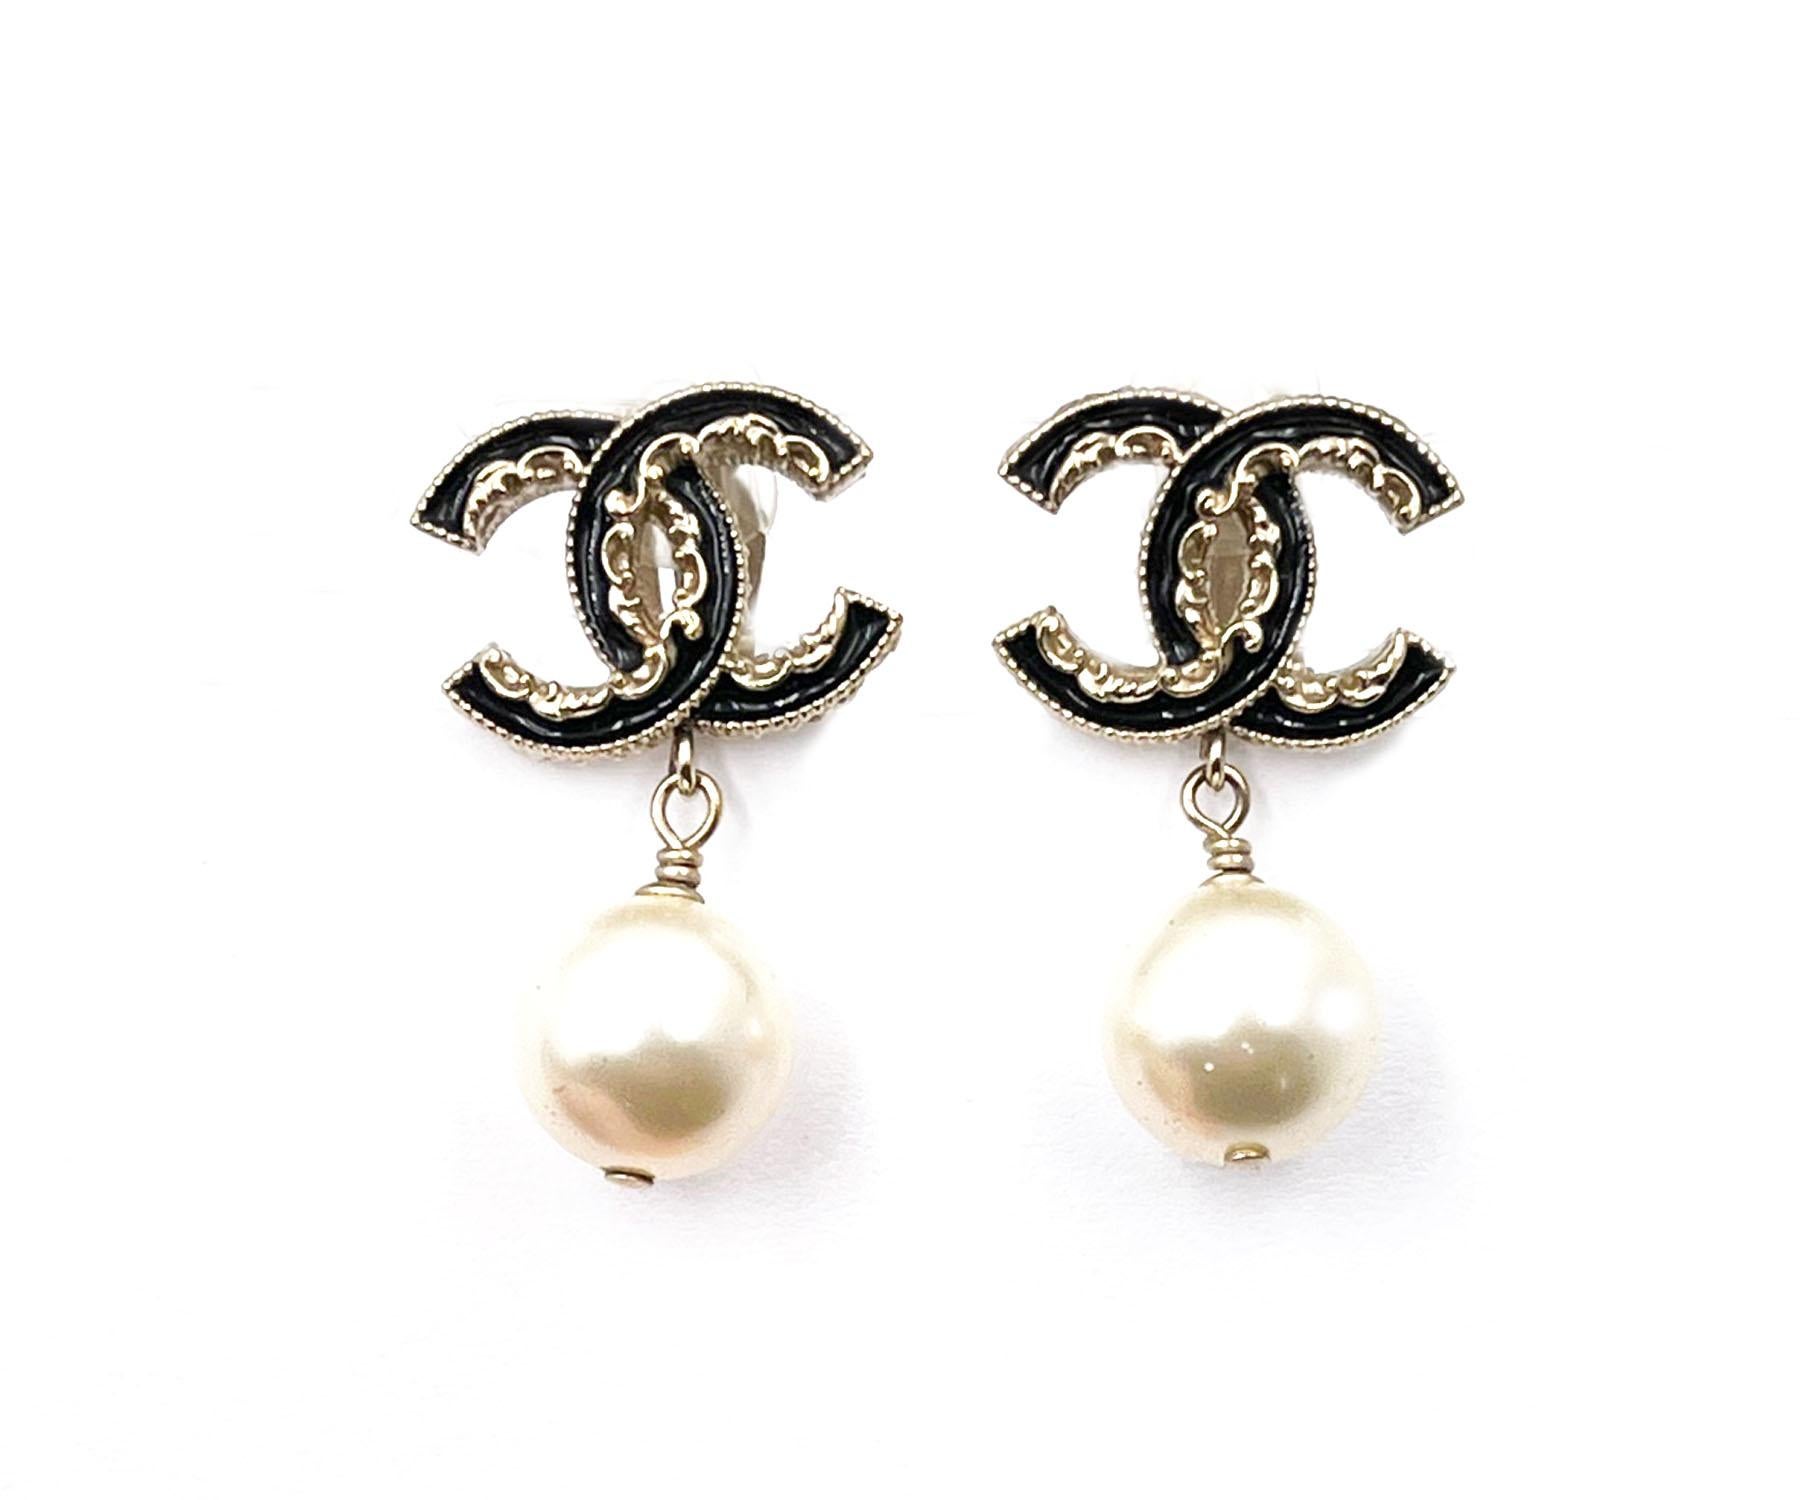 Chanel Gold CC Schwarze Rüschen-Perlen-Ohrclips mit Clip auf Tropfen

* Markiert 14
* Hergestellt in Italien
*Wird mit der Originalverpackung und dem Etui geliefert.

- Es ist ungefähr 0,8